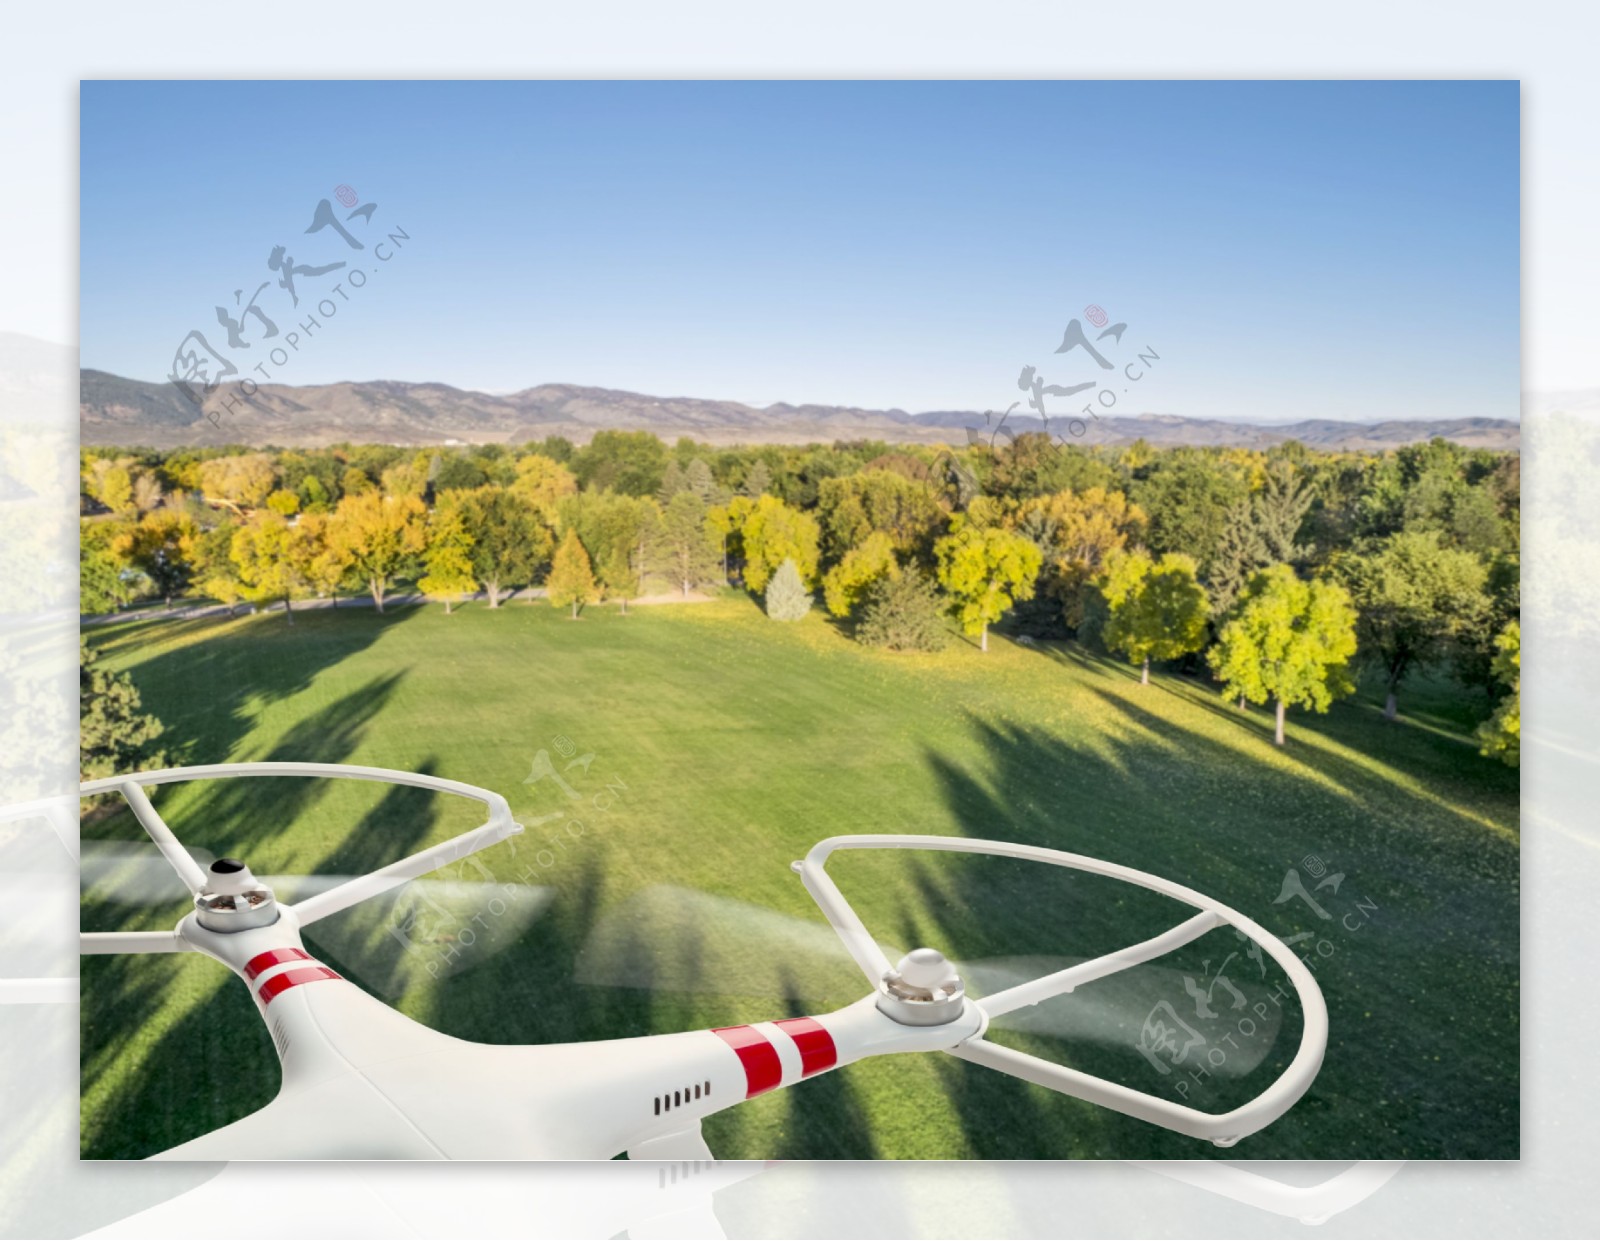 草地上空的飞行器图片